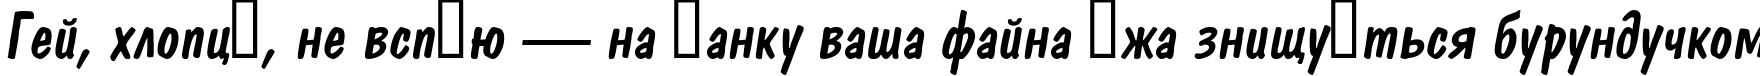 Пример написания шрифтом a_DomIno Italic текста на украинском